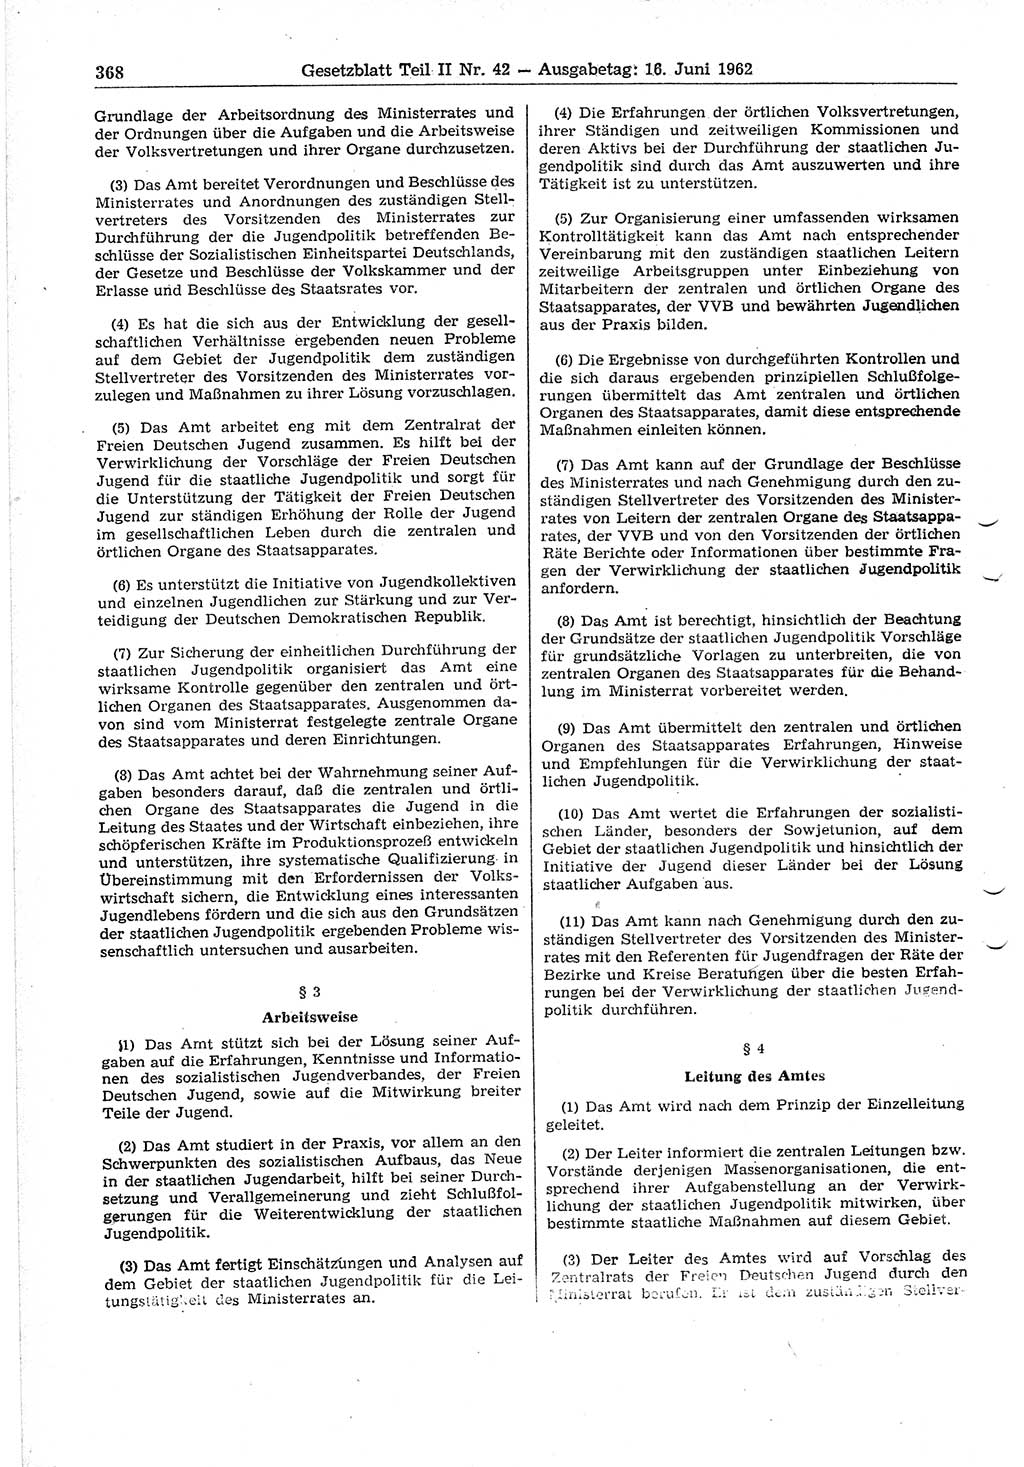 Gesetzblatt (GBl.) der Deutschen Demokratischen Republik (DDR) Teil ⅠⅠ 1962, Seite 368 (GBl. DDR ⅠⅠ 1962, S. 368)